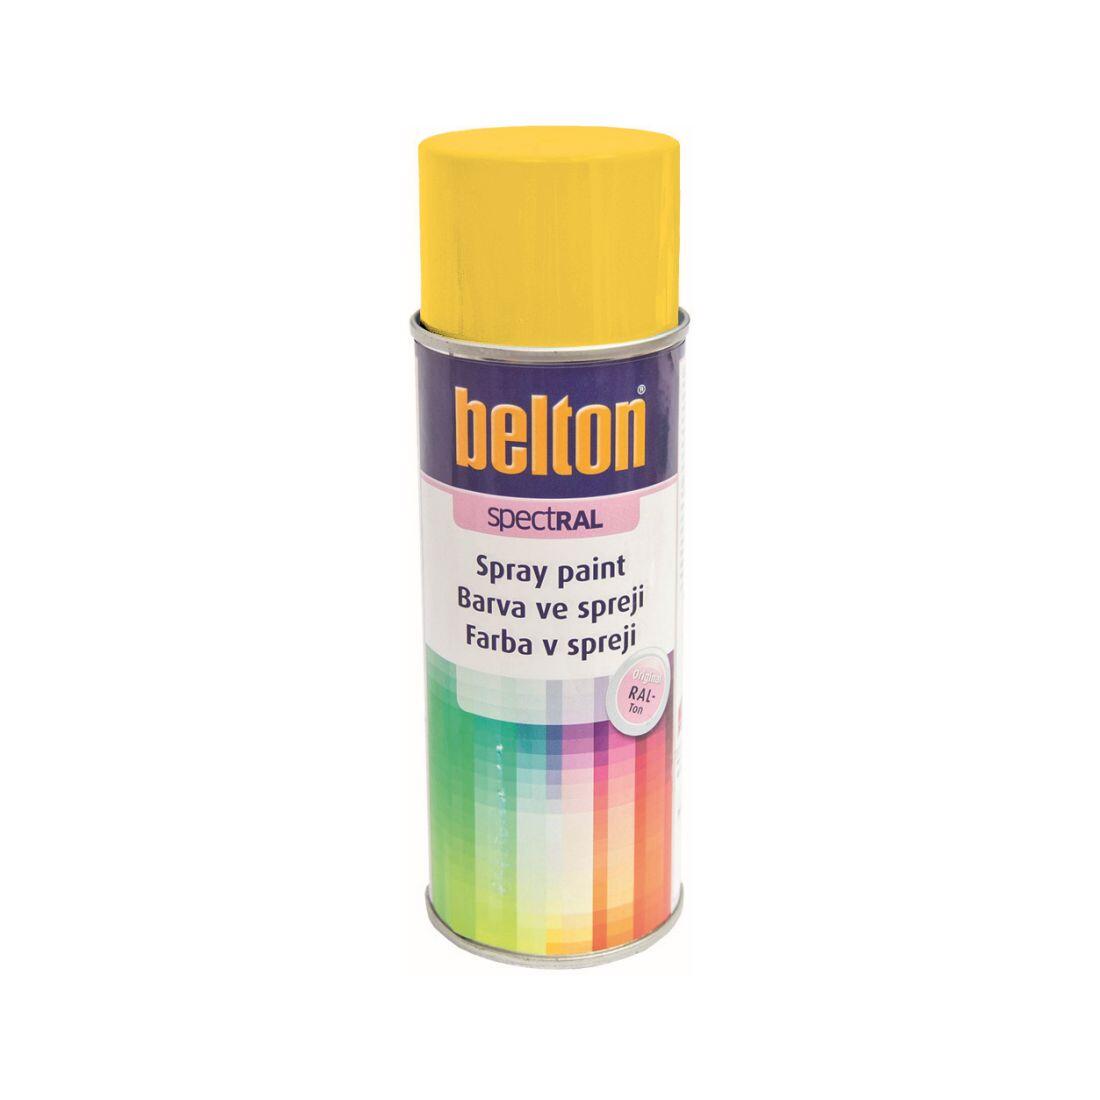 barva ve spreji BELTON RAL 1021, 400ml ŽL hořčičná 0.31 Kg MAXMIX Sklad14 825380 18